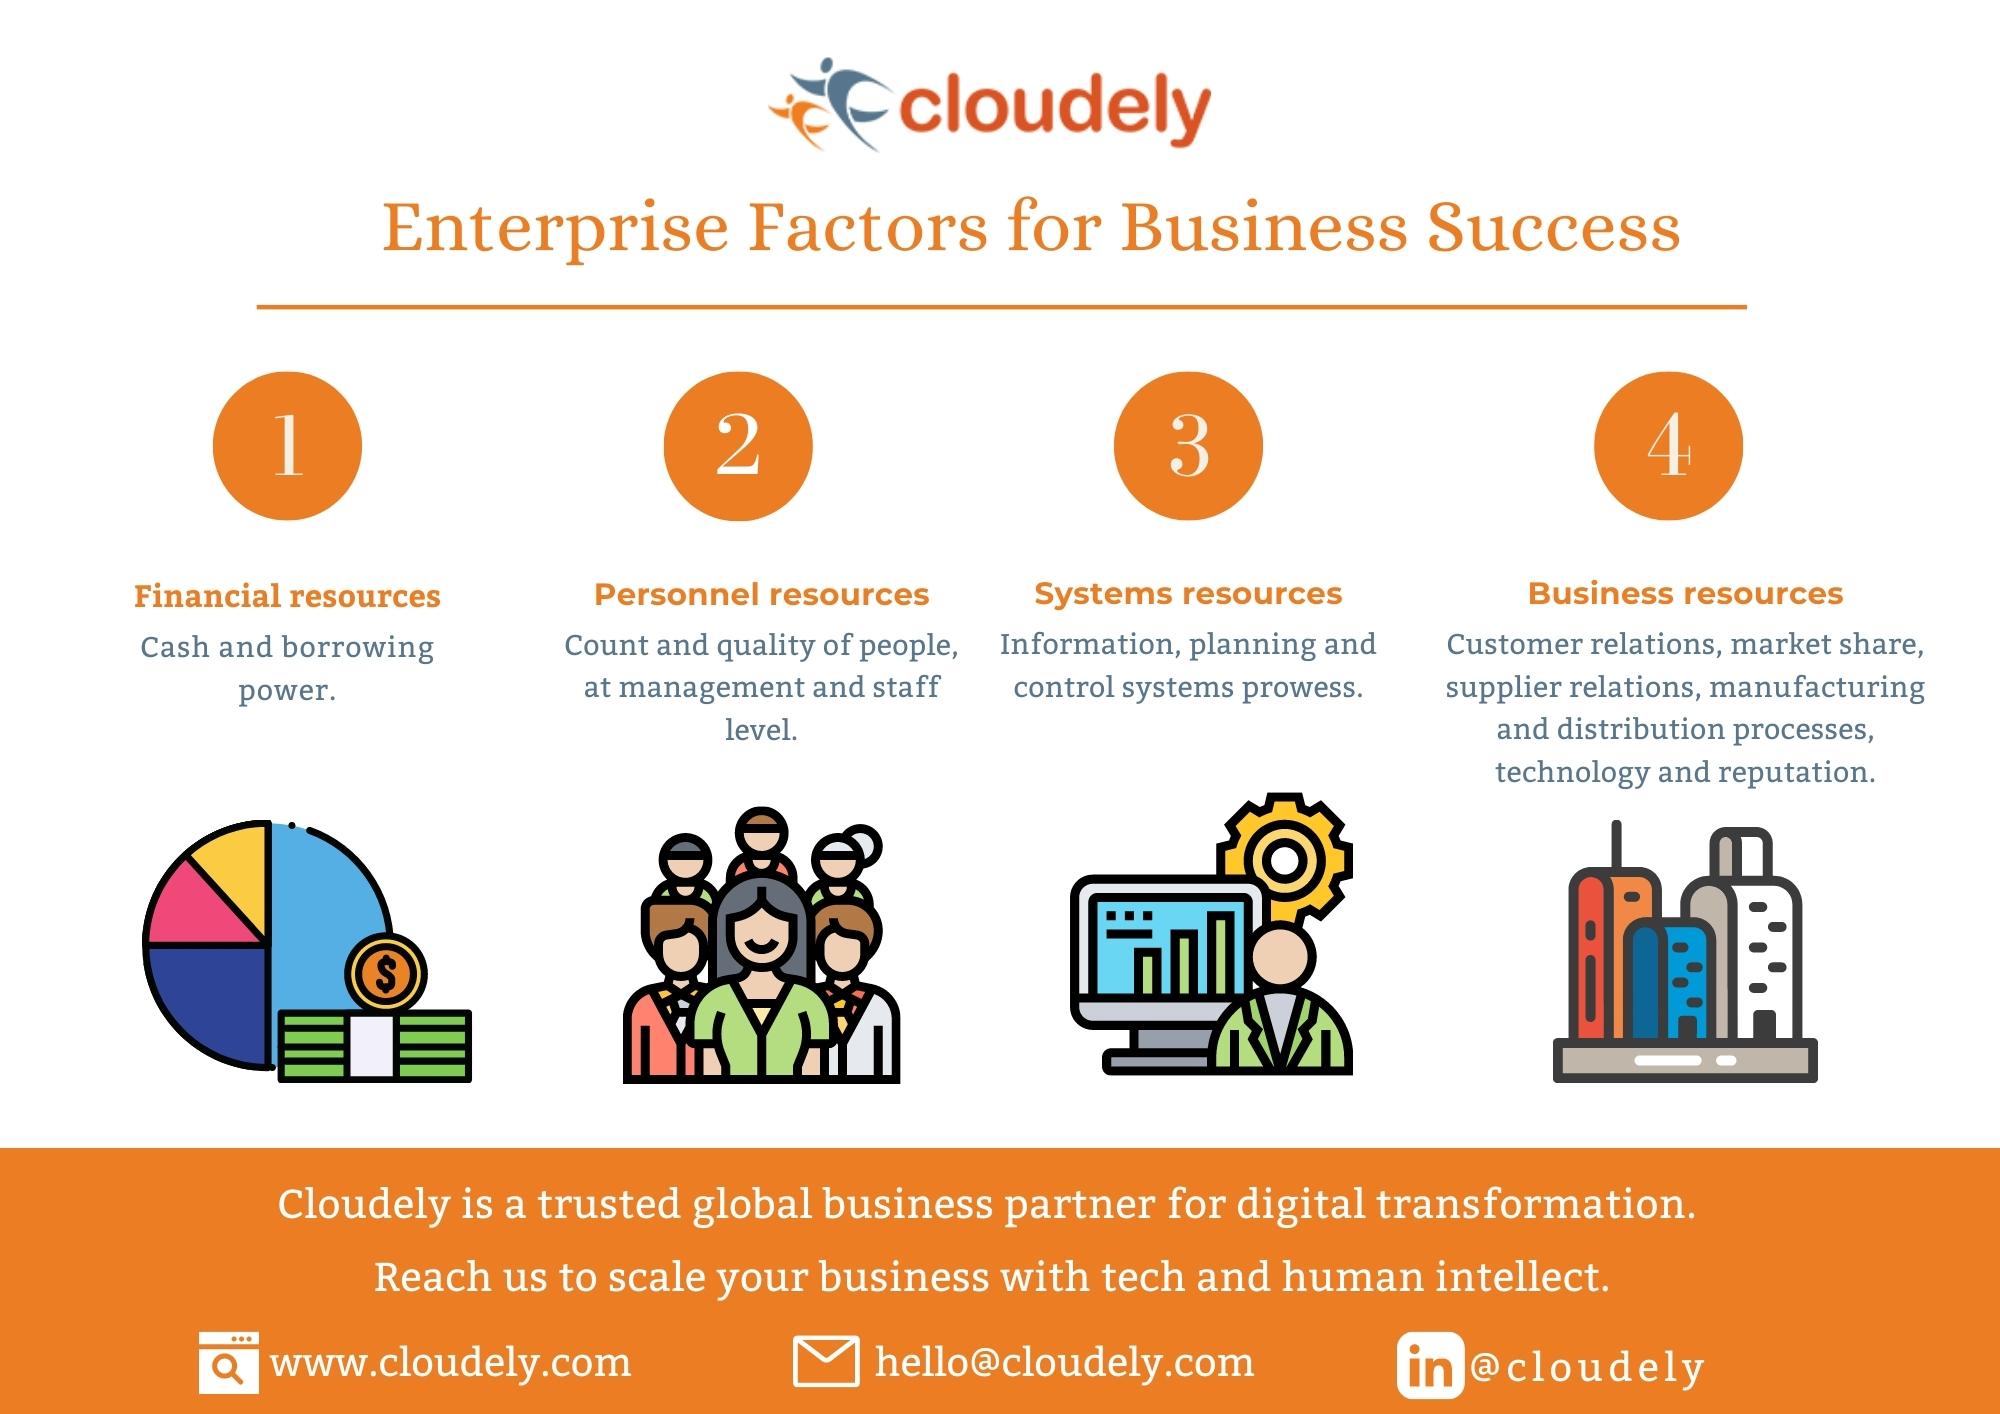 Enterprise factors for business success